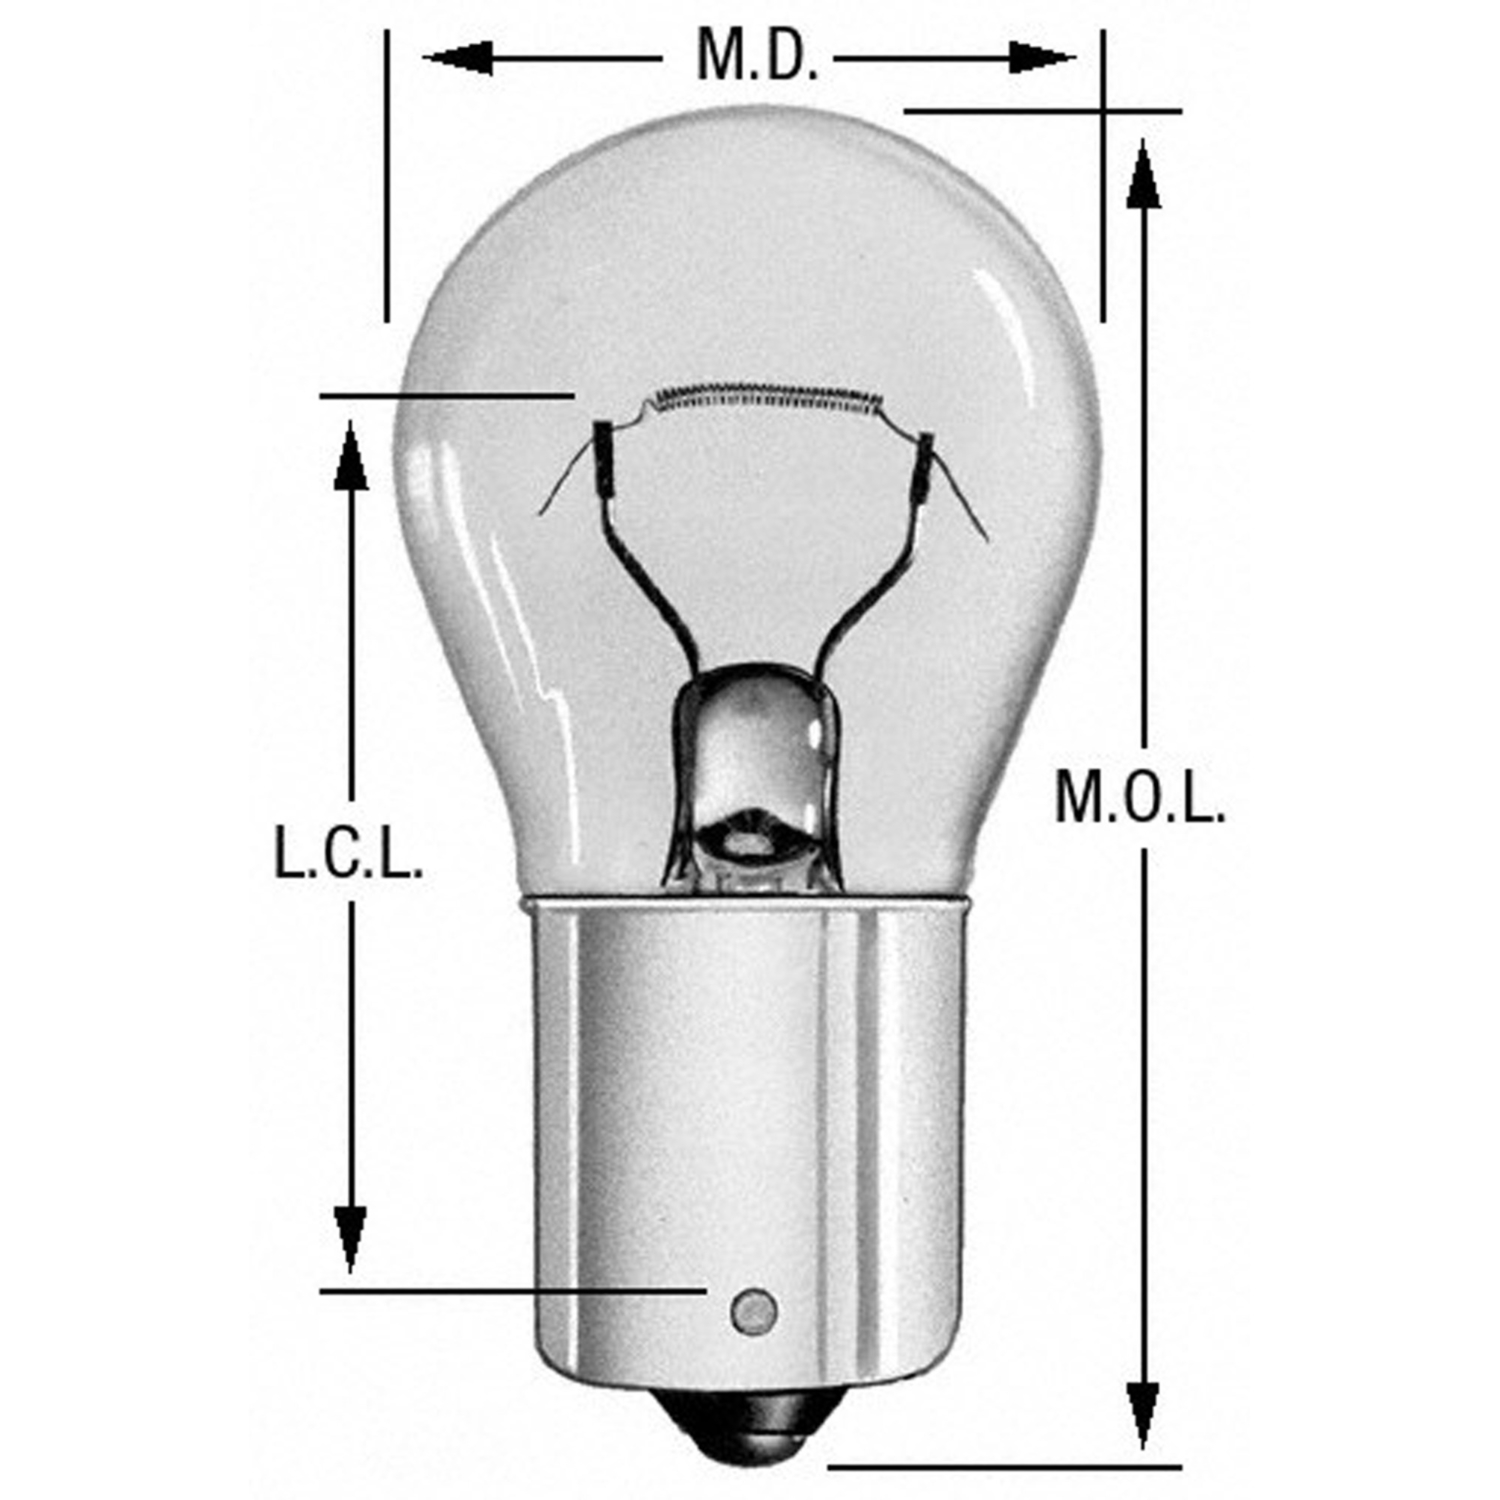 WAGNER LIGHTING - Turn Signal Light Bulb (Rear) - WLP BP1073